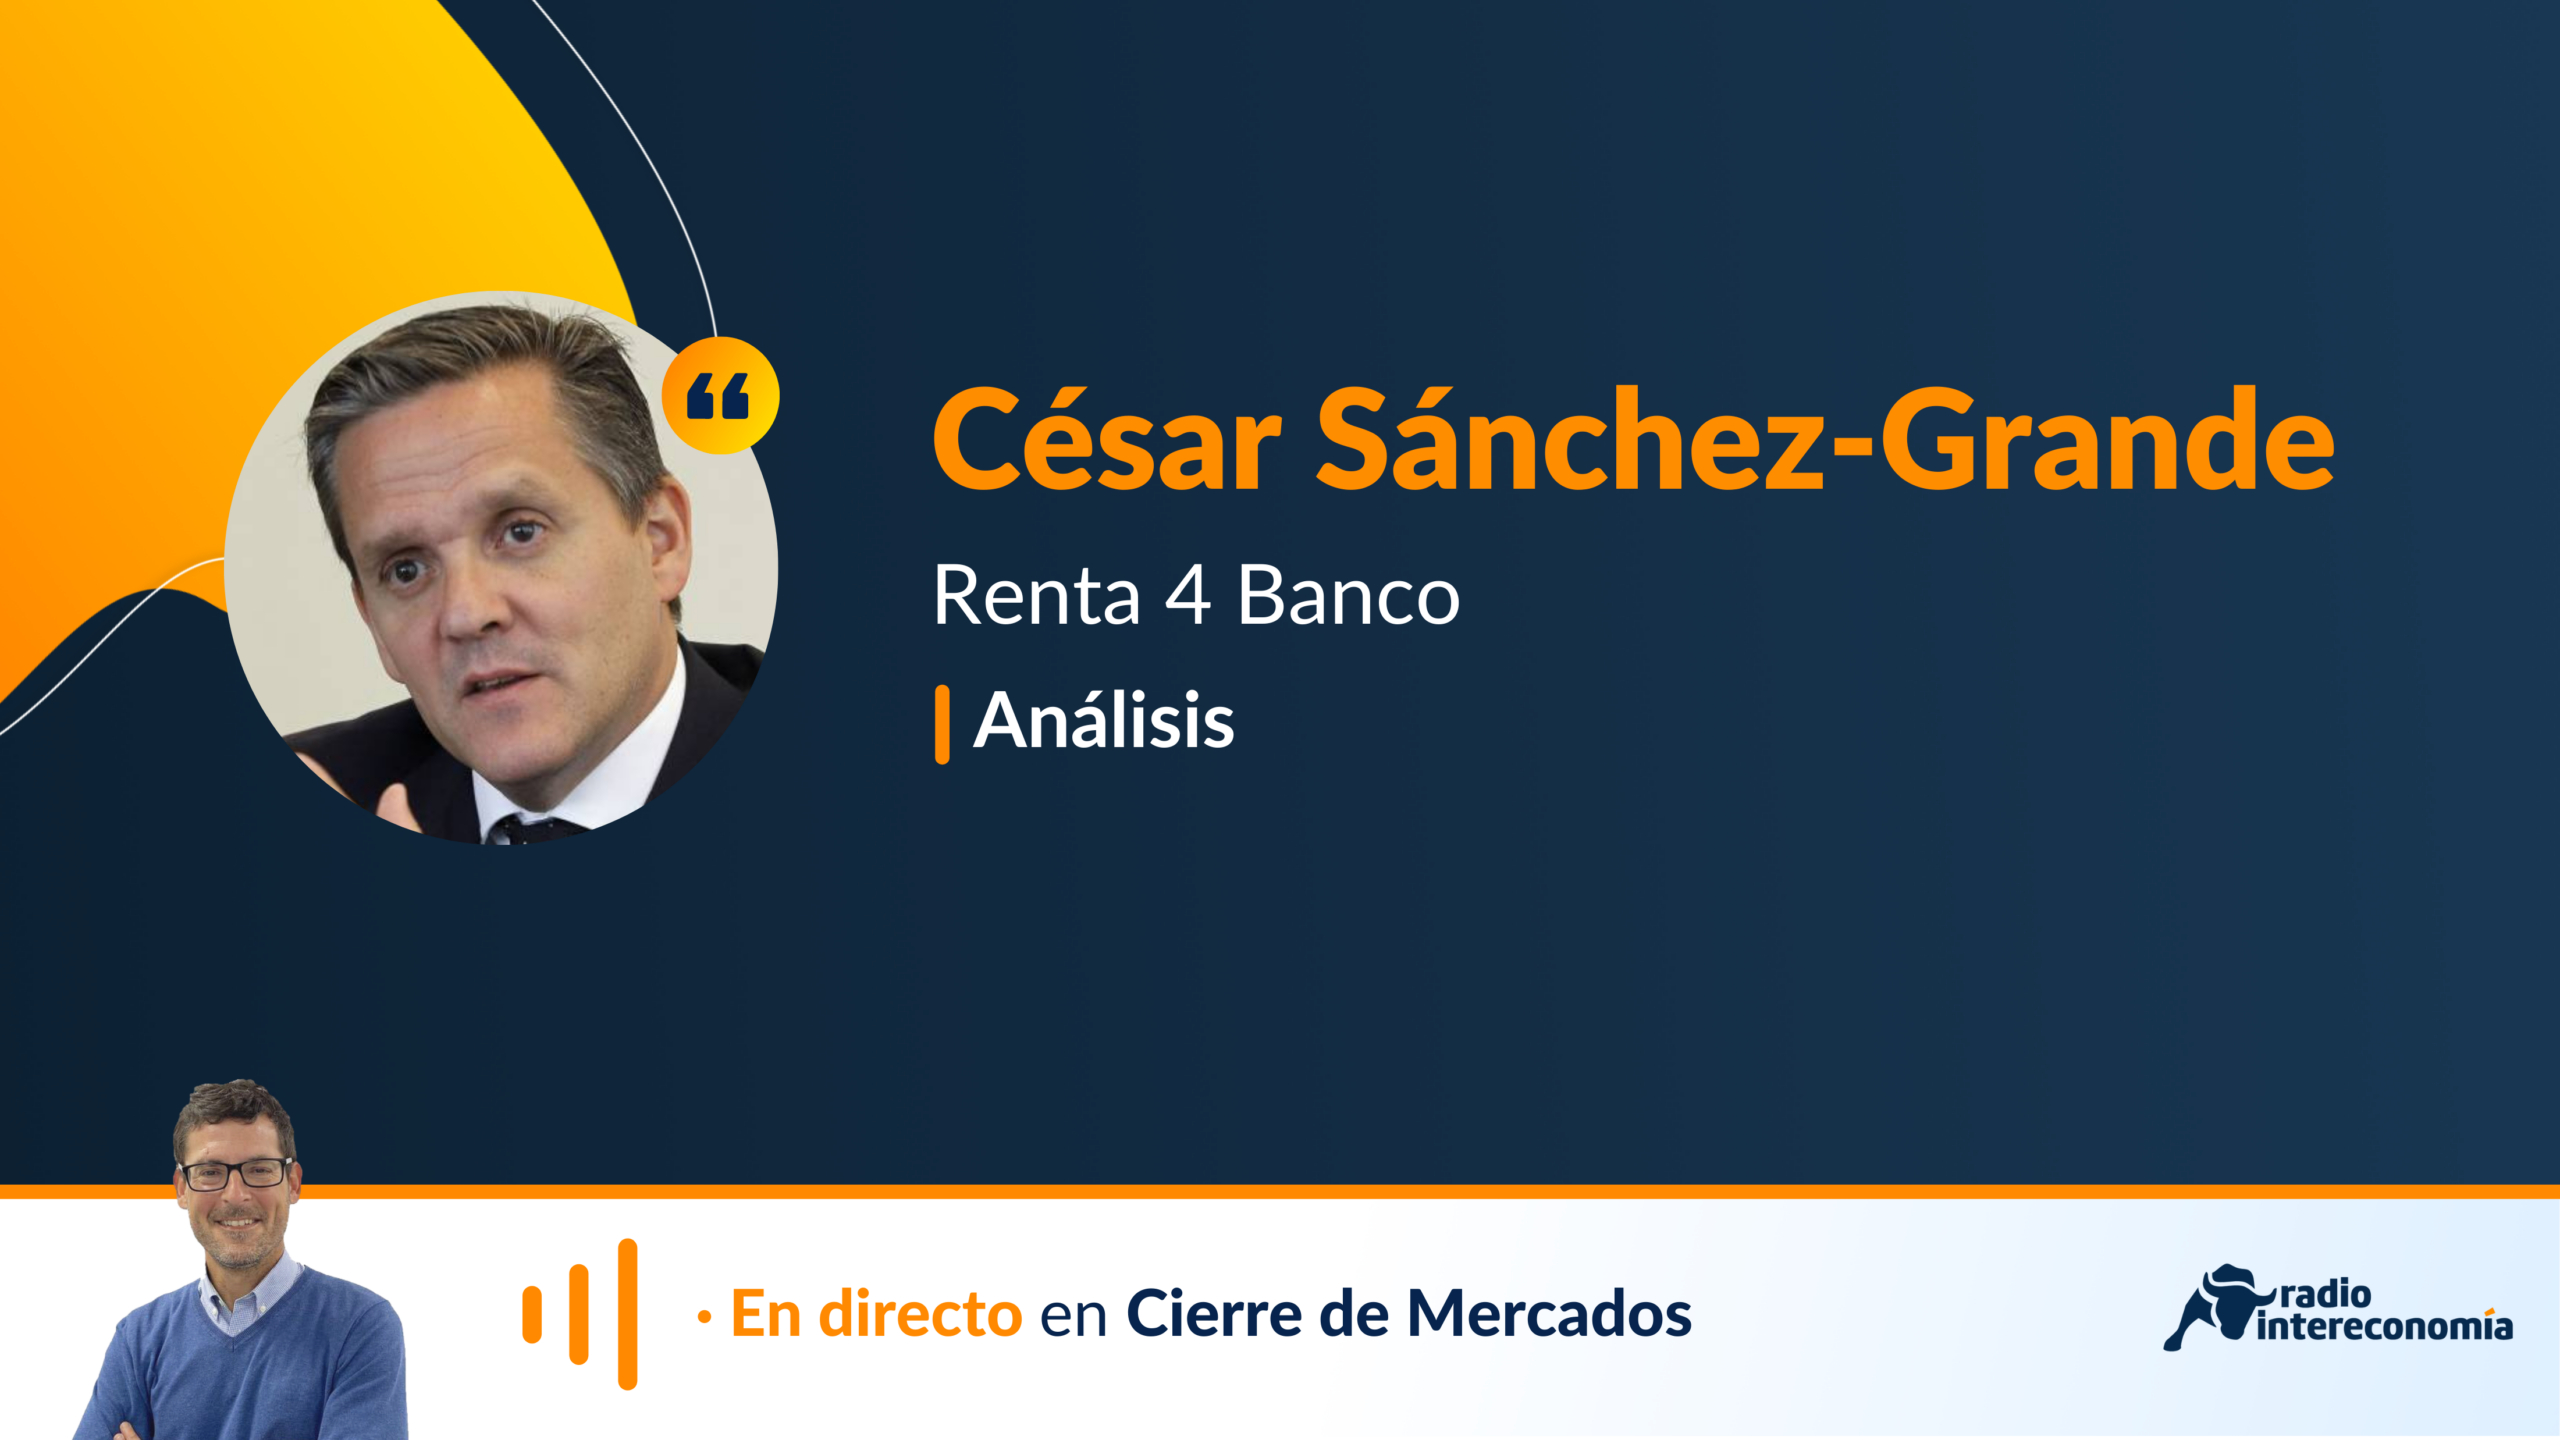 «La tormenta en el sector bancario va a afectar a macro». Análisis con César Sánchez-Grande de Renta 4